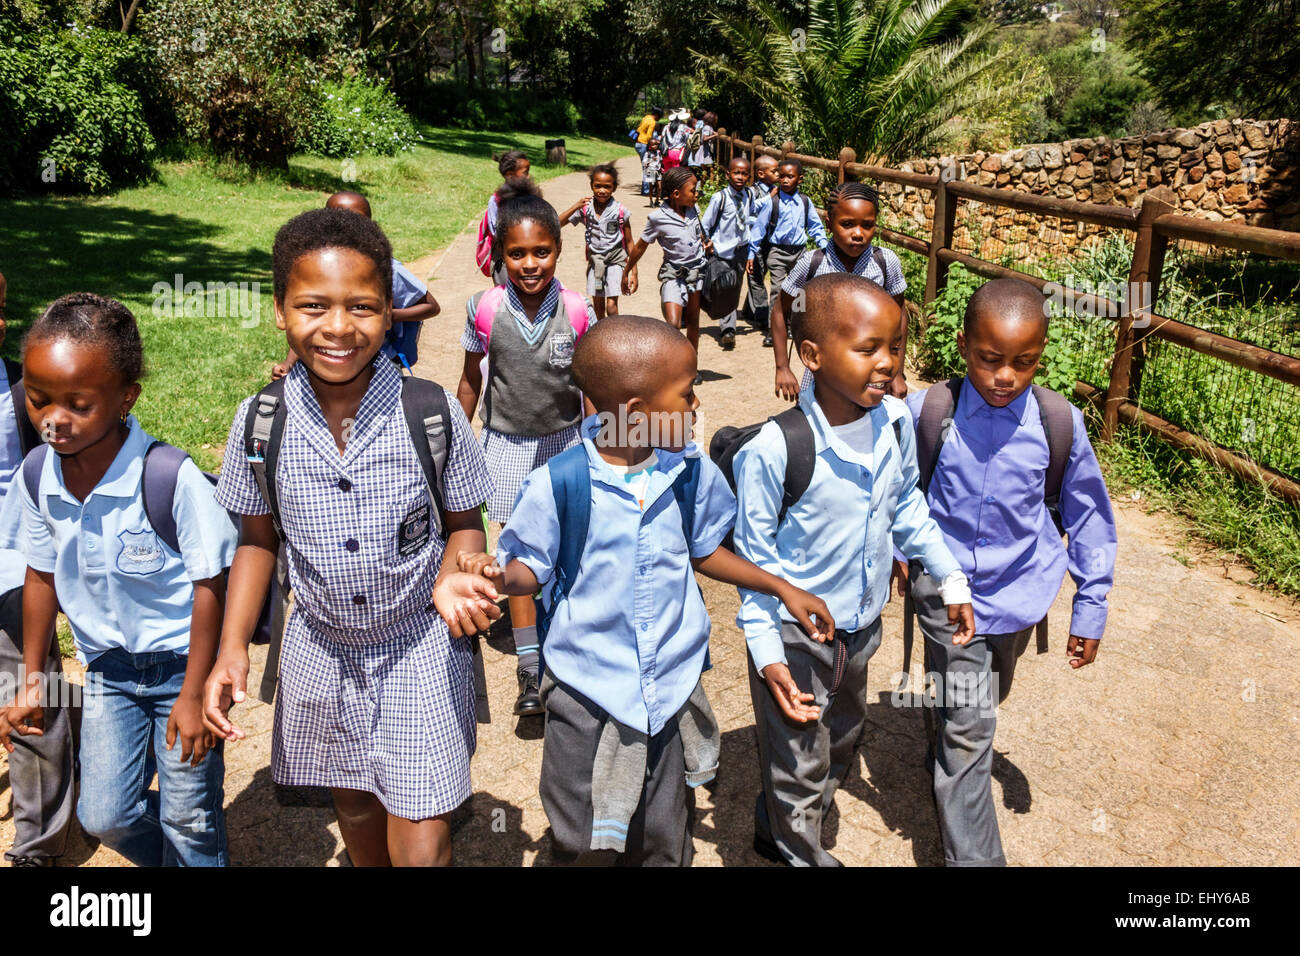 Johannesburgo Sudáfrica,Zoo,Negro chico niños niños niñas niñas,niña joven,estudiantes estudiantes viaje de campo,uniforme,SAfri150304040 Foto de stock